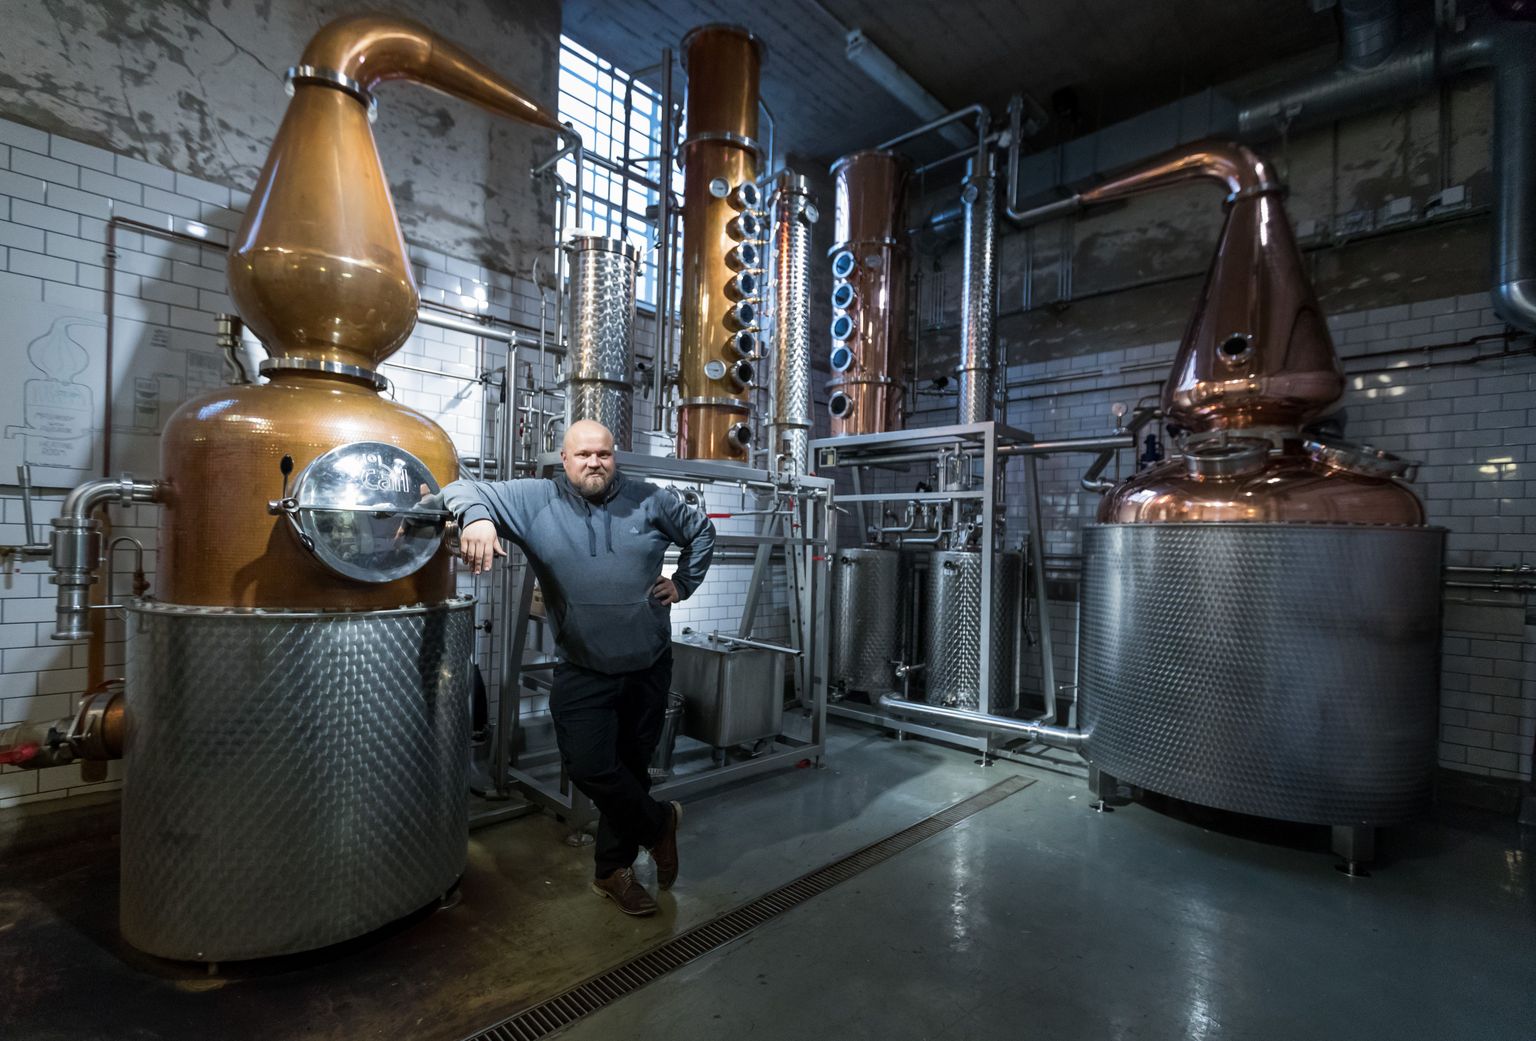 The Helsinki Distilling Company omanik Mikko Mykkänen oma laboratoorium-tootmisruumis. Paremal on näha äsja paika sätitud uus katel.